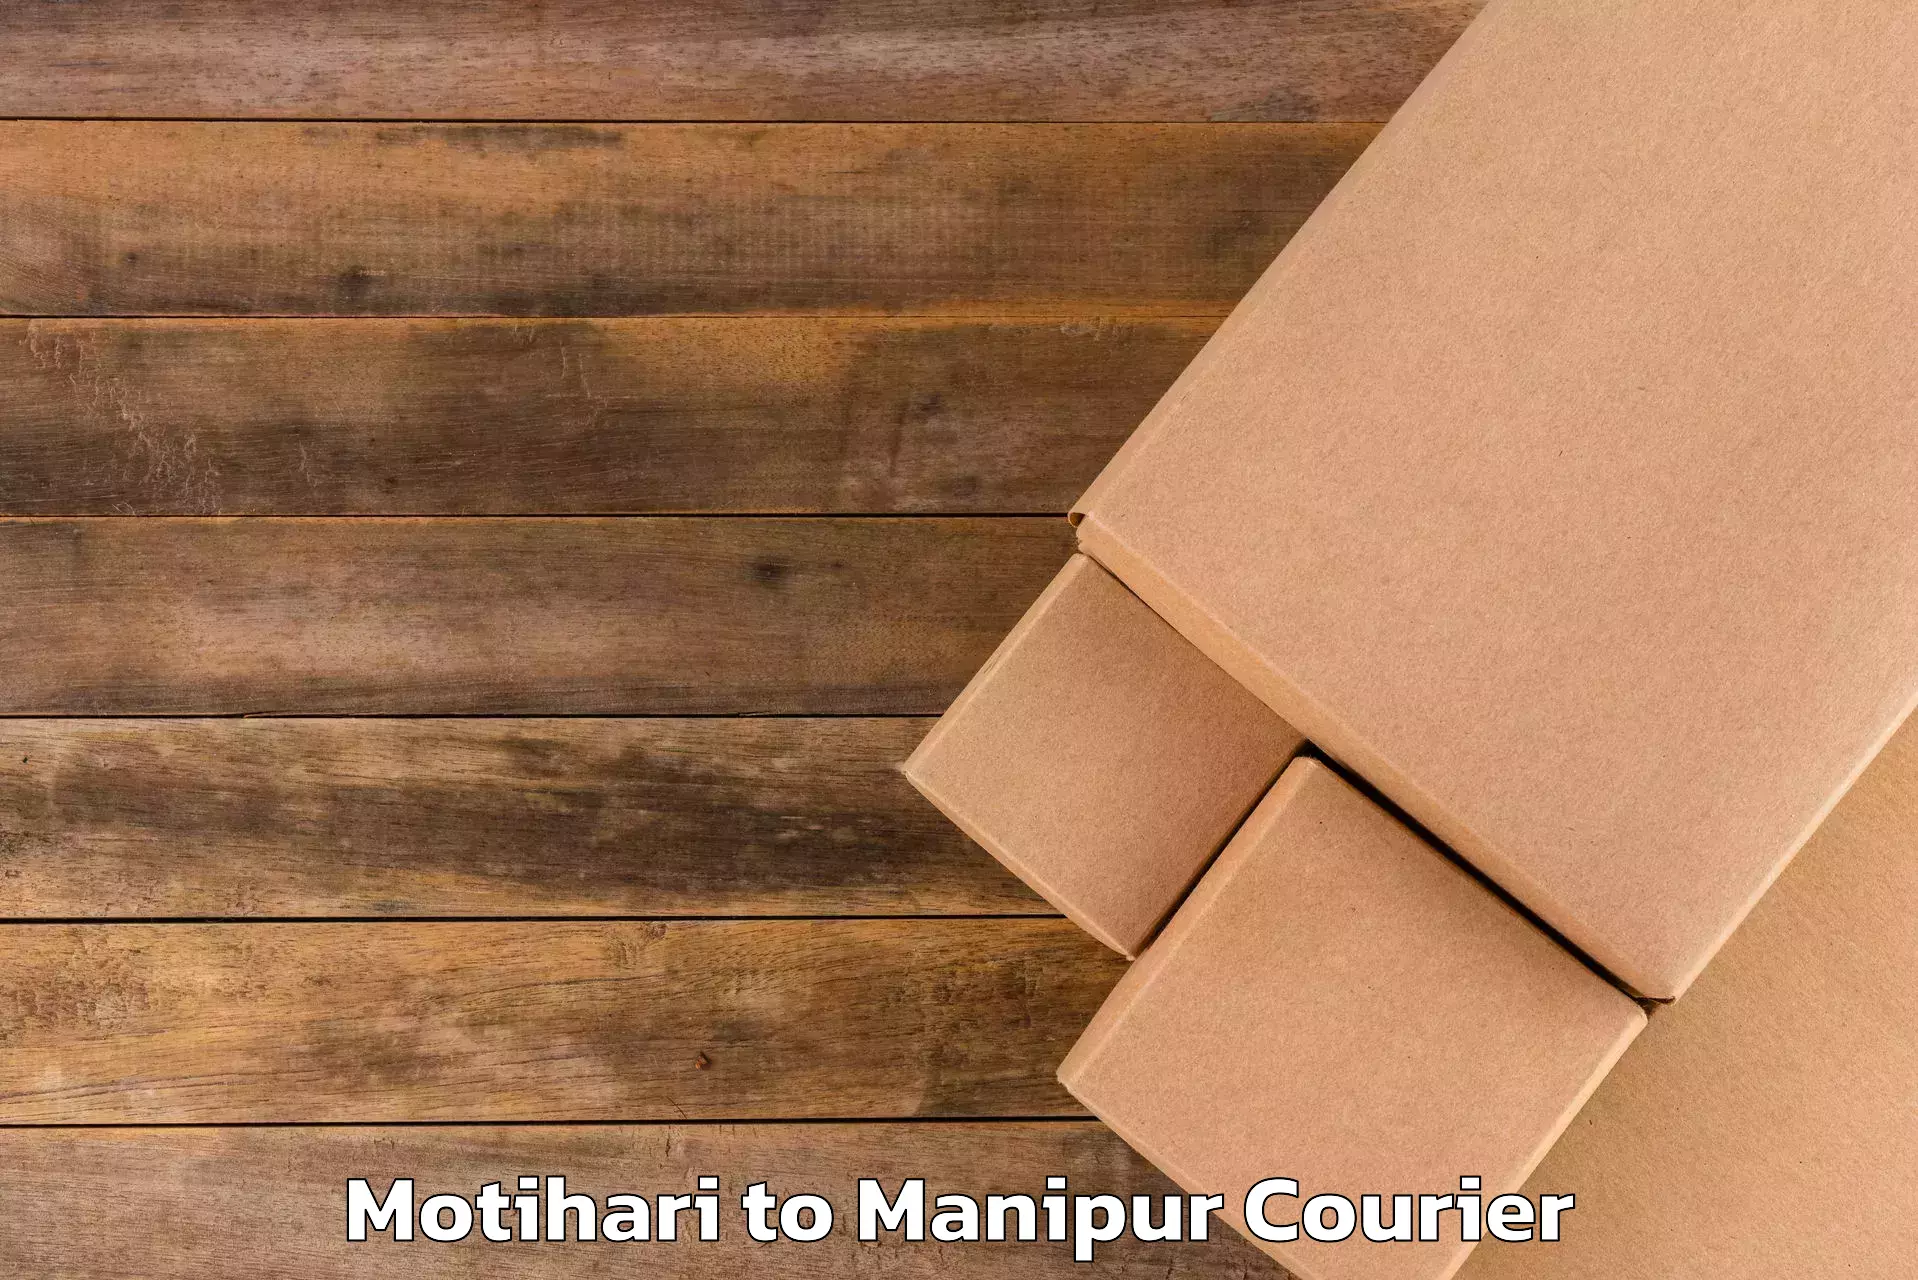 Baggage shipping experts Motihari to Manipur